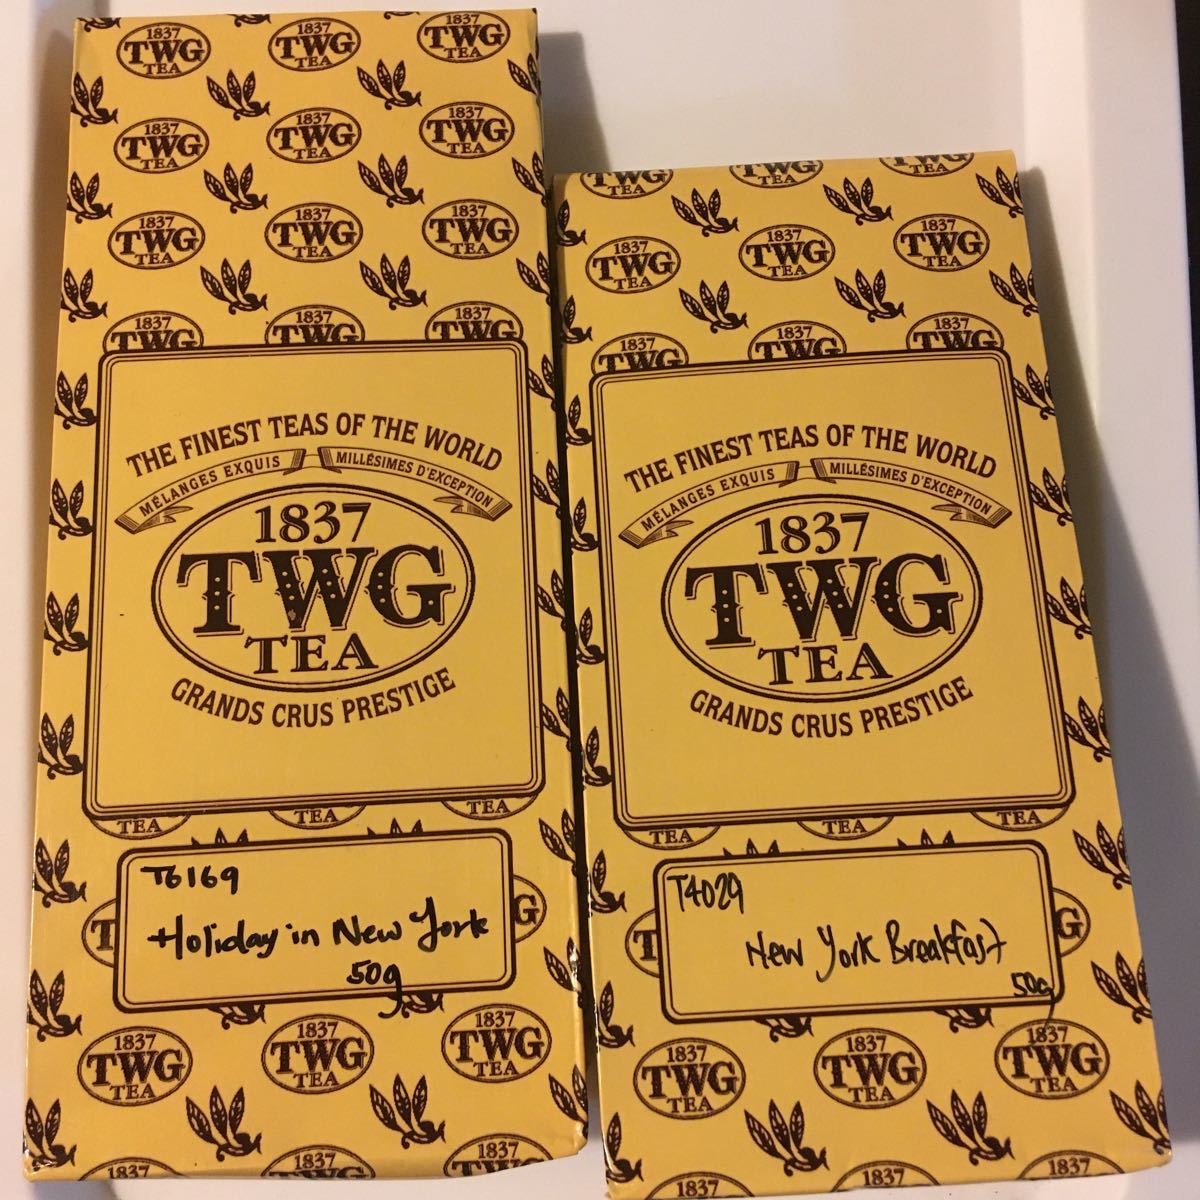 TWG茶葉50g x 2 ホリデーインニューヨーク&ニューヨークブレックファースト